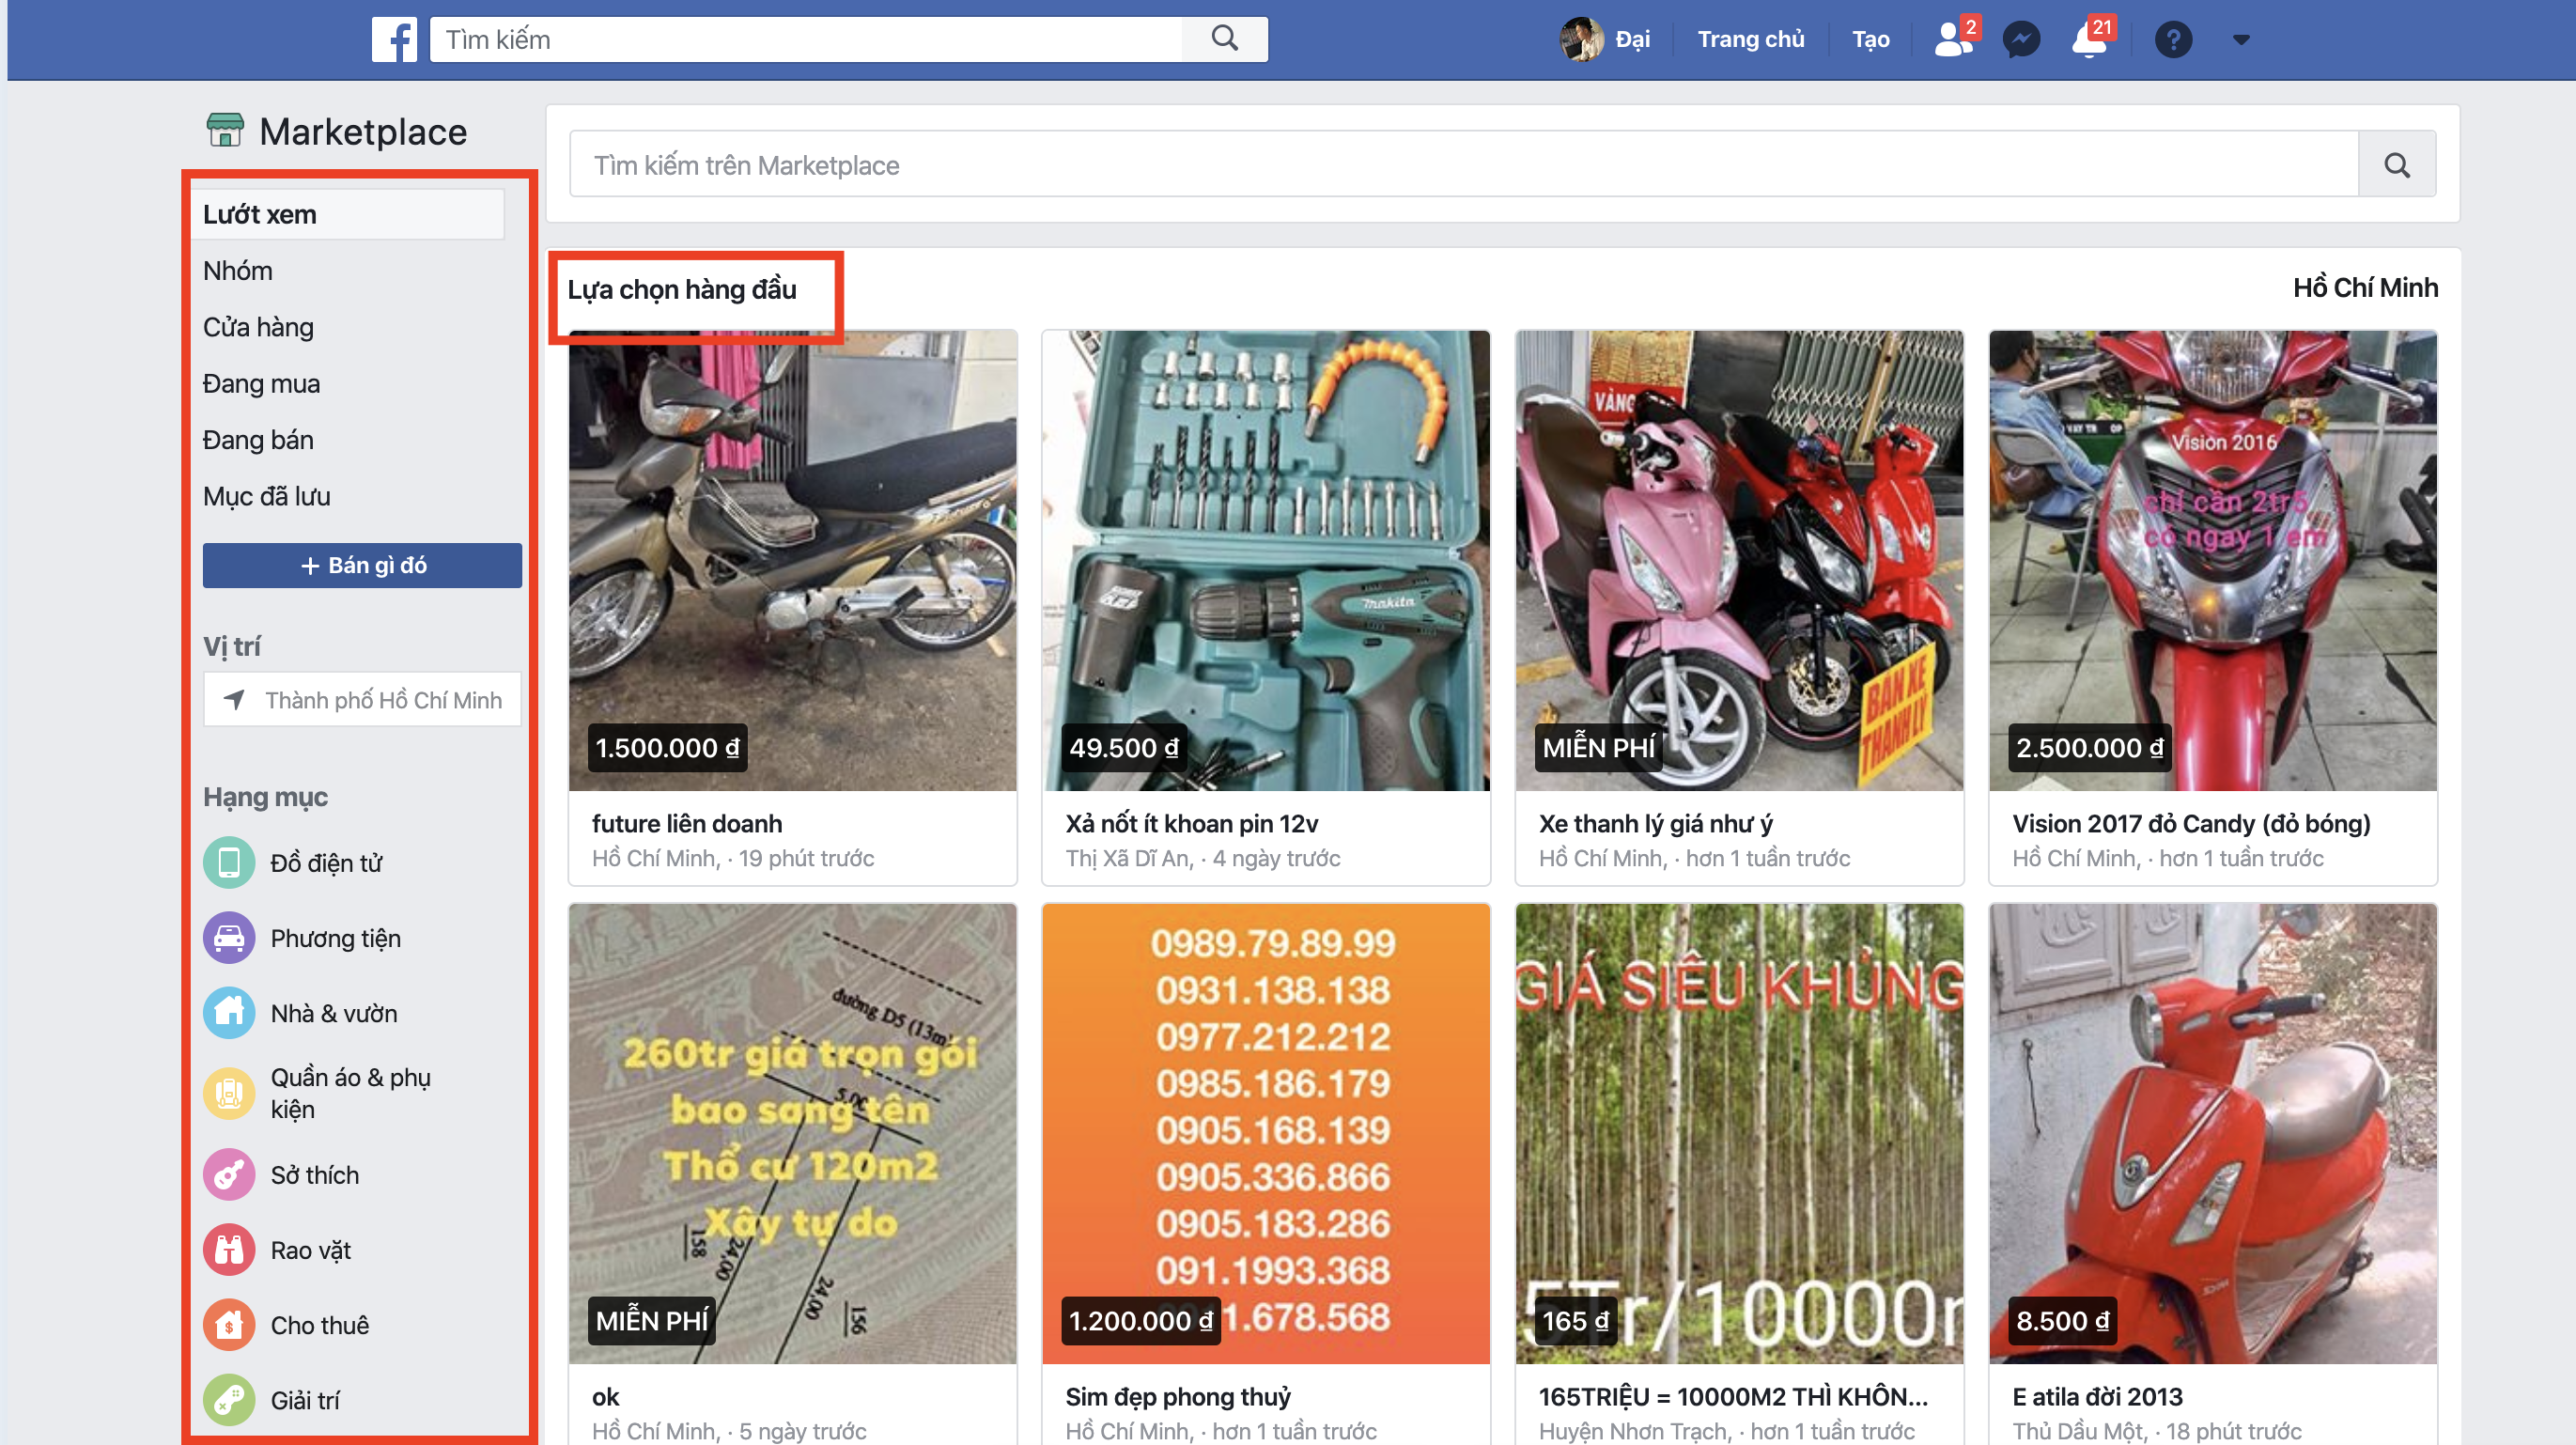 Chia sẻ mẹo mua hàng từ Facebook Marketplace tránh bị lừa 4